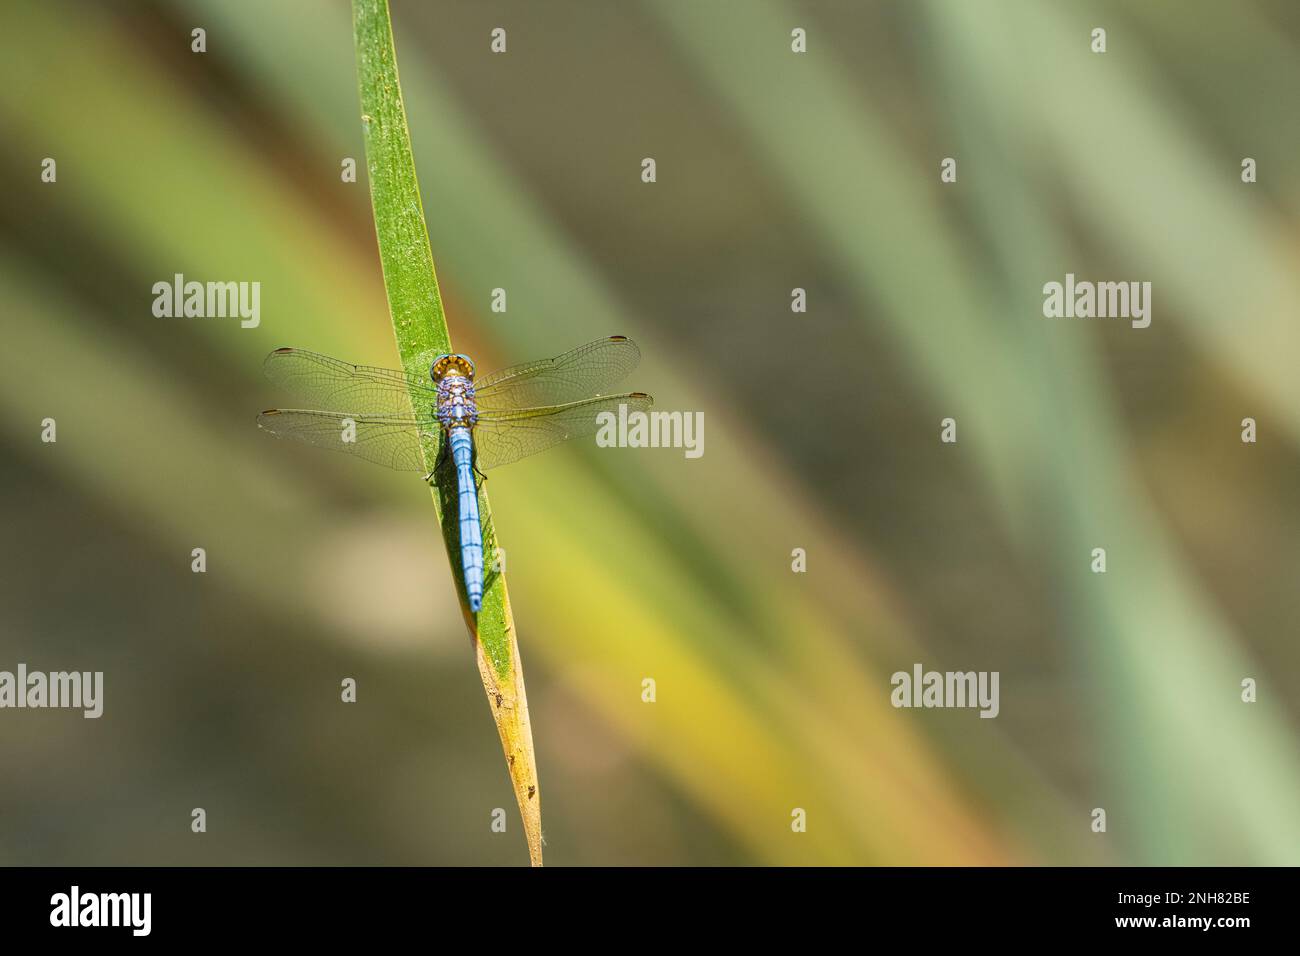 Primo piano di una libellula poggiante su una foglia Foto Stock